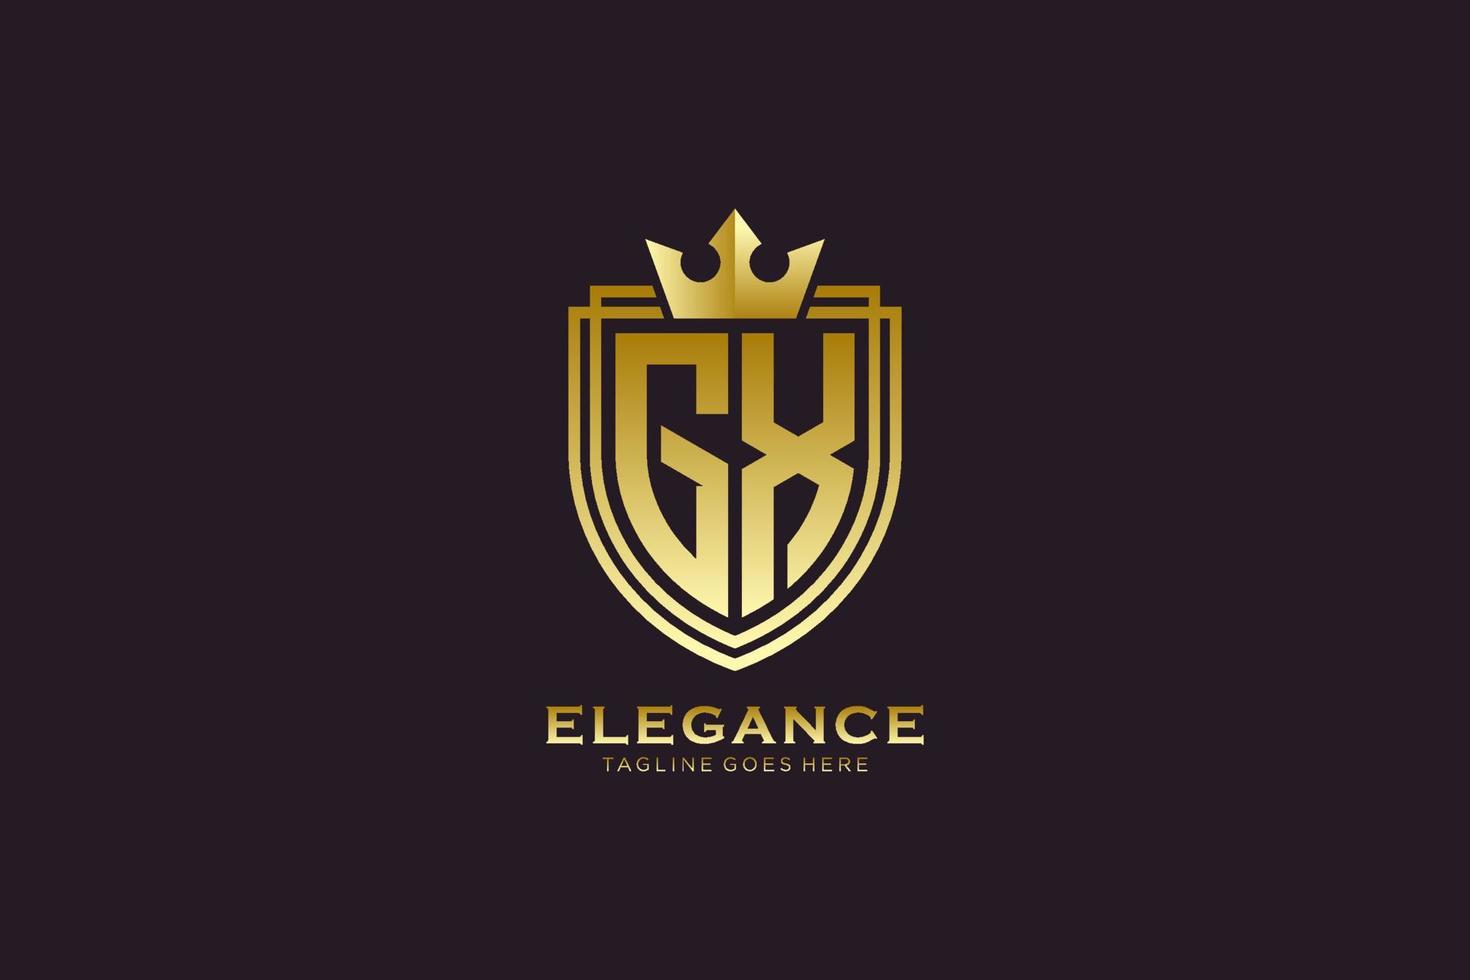 första gx elegant lyx monogram logotyp eller bricka mall med rullar och kunglig krona - perfekt för lyxig branding projekt vektor